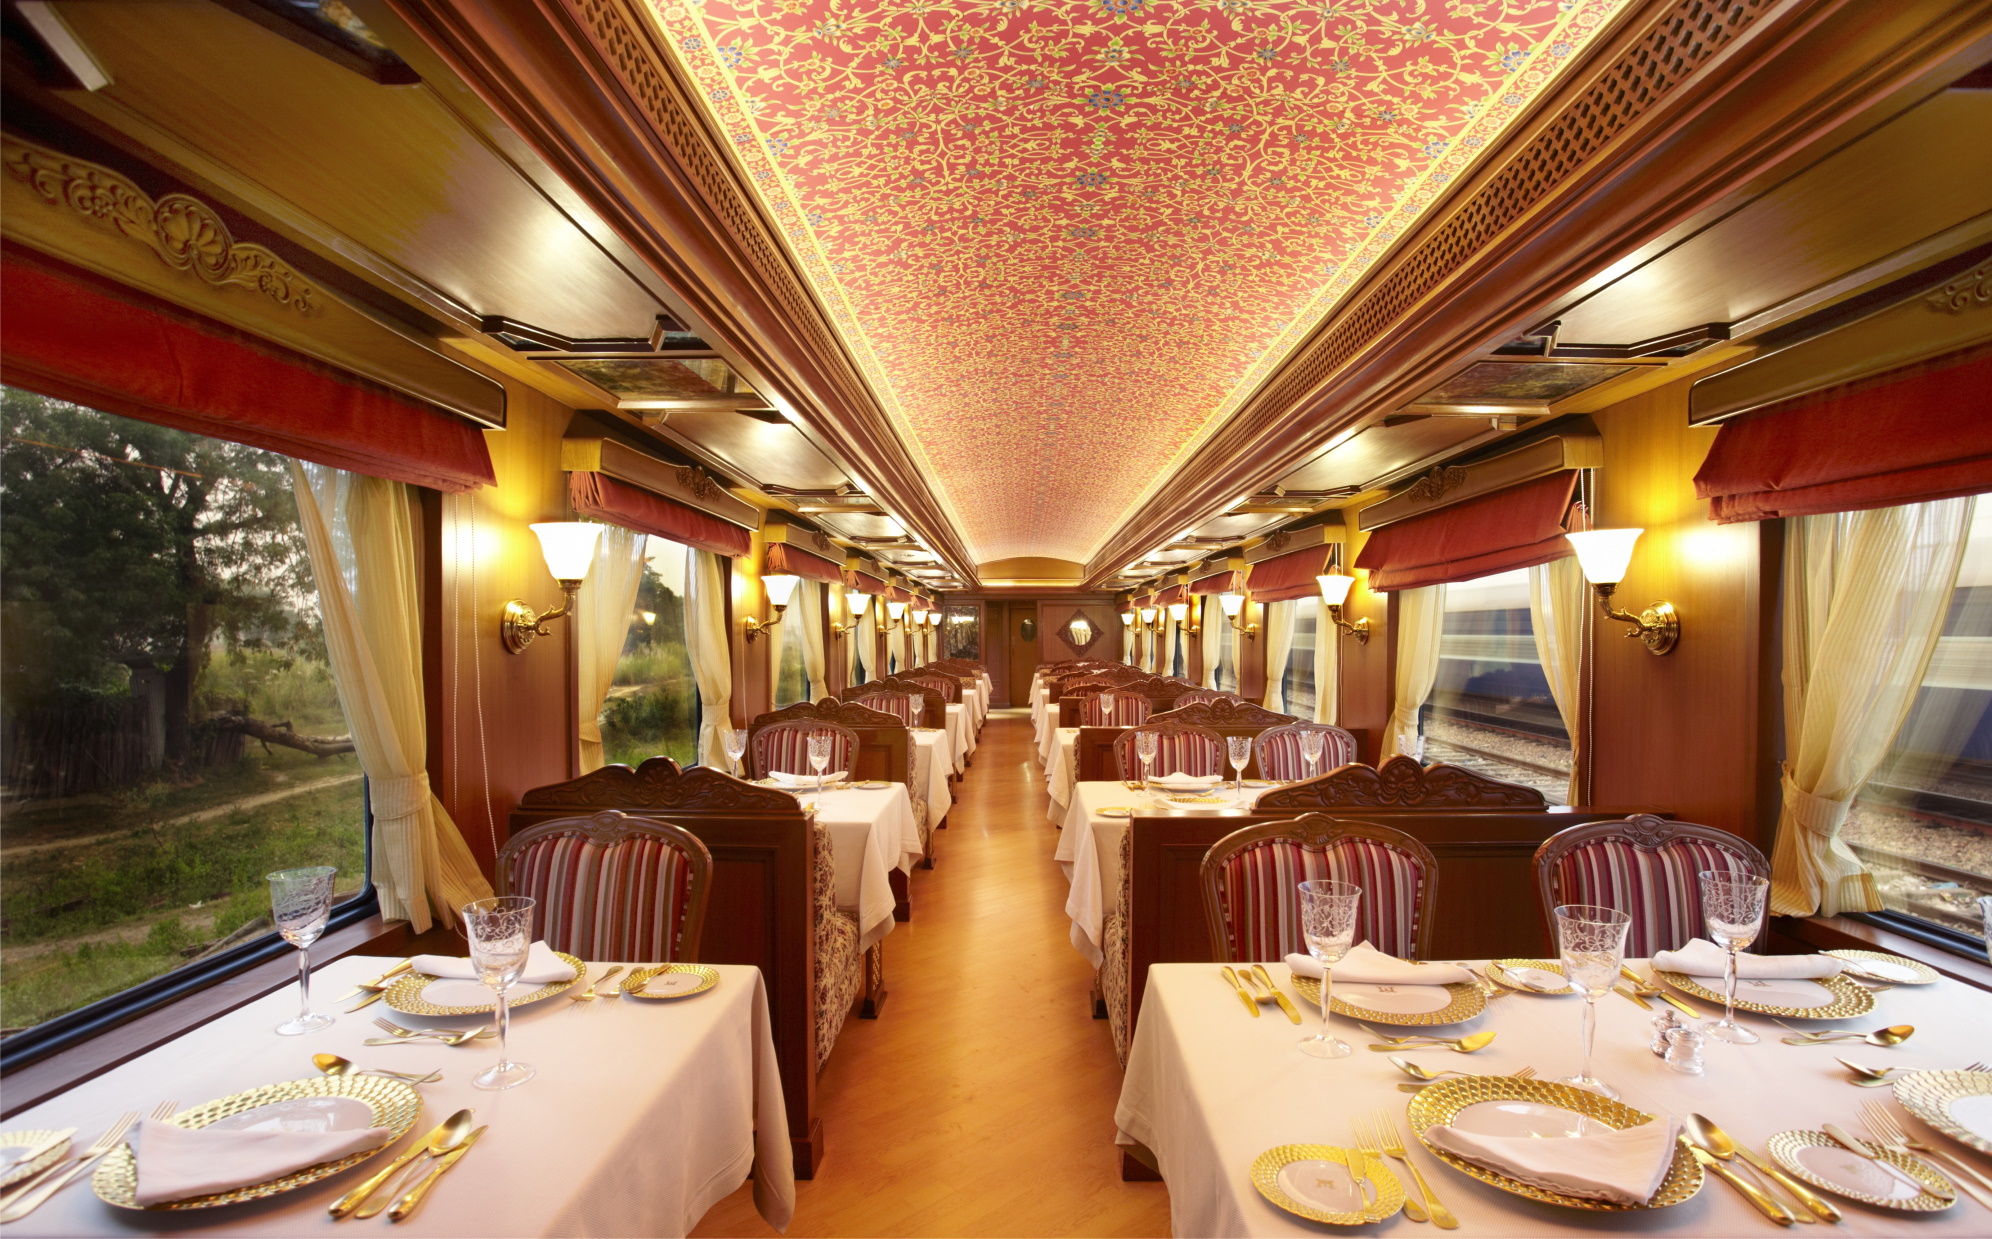 Maharaja's Express, Grands Trains du Monde